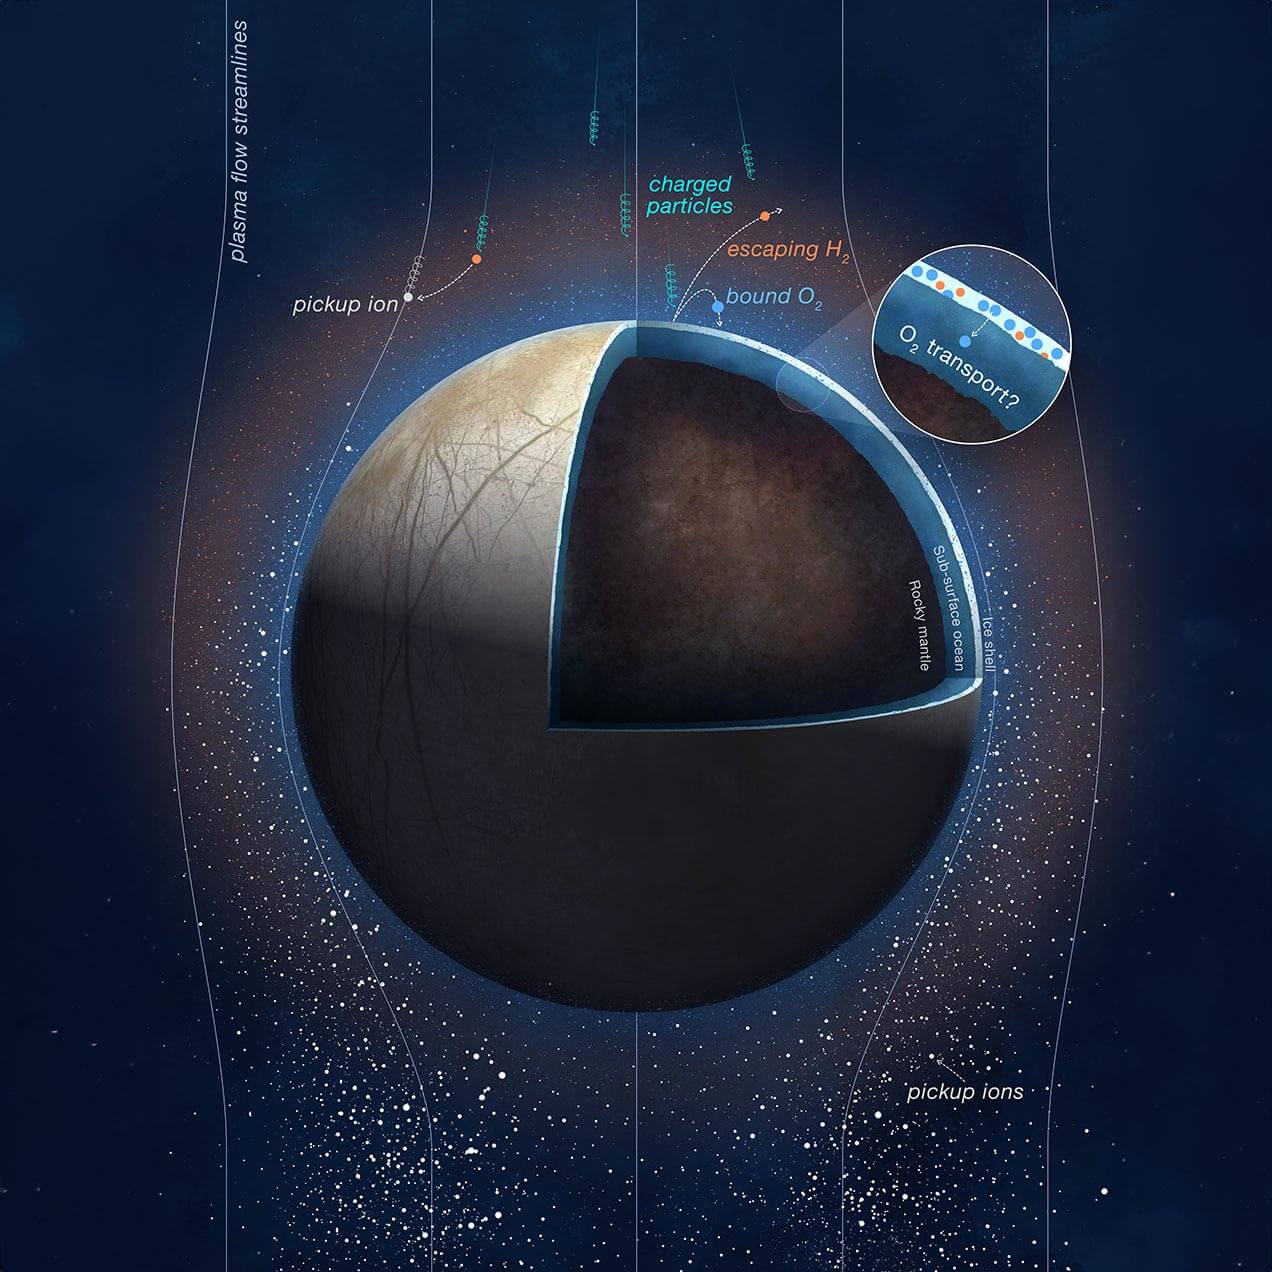 האיור הזה מראה חלקיקים טעונים מצדק פוגעים בפני אירופה, ומפרידים מולקולות של מים קפואים למולקולות מימן וחמצן. המדענים מאמינים שחלק מגזי החמצן החדשים האלה שנוצרים יכולים לנוע אל האוקיינוס התת קרקעי של הירח, כפי שמראה האיור בעיגול. קרדיט: NASA/JPL-Caltech/SWRI/PU